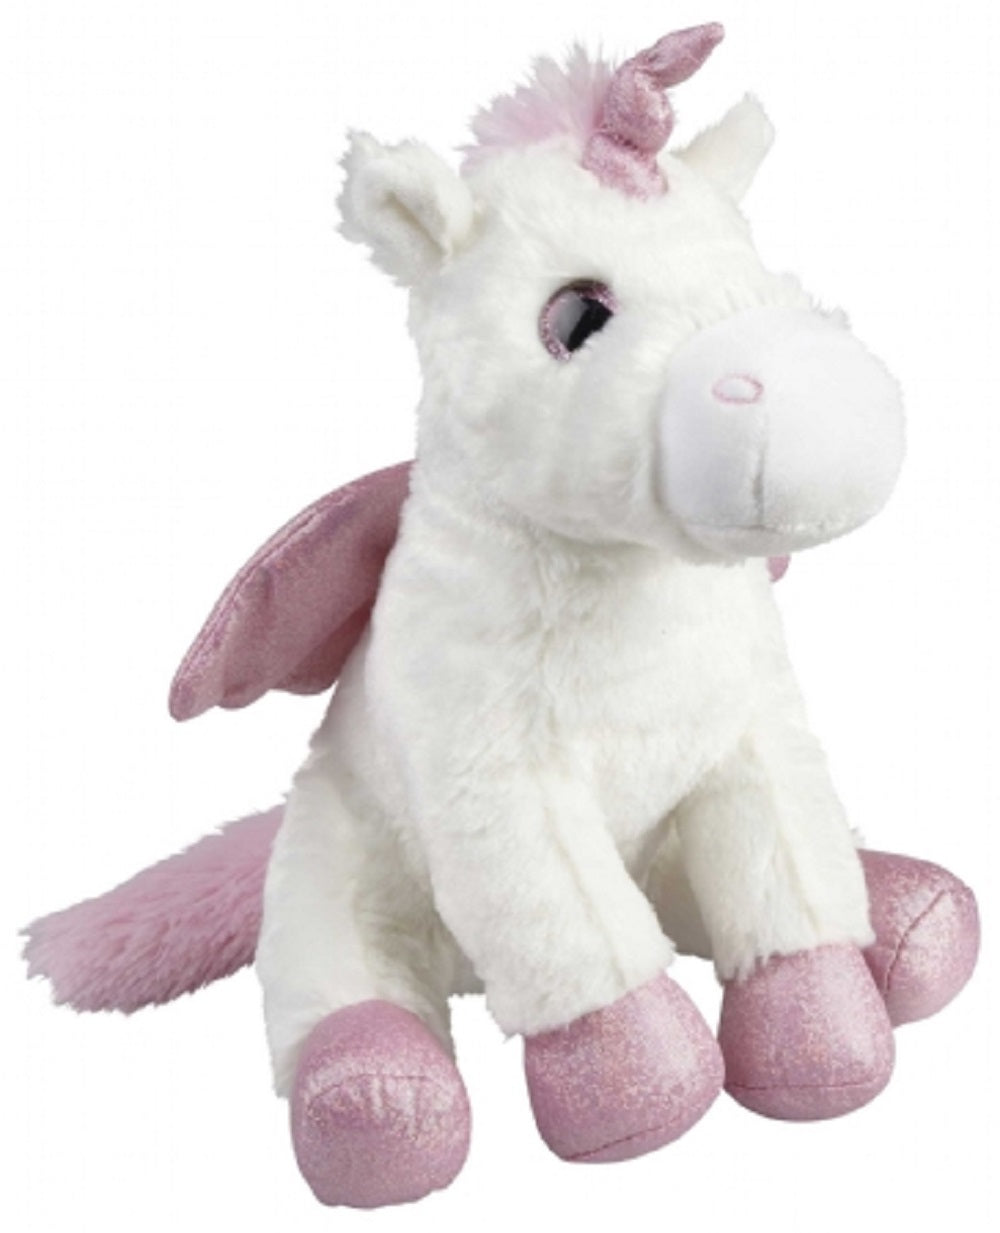 Ravensden Soft Toy Sitting Unicorn 25cm